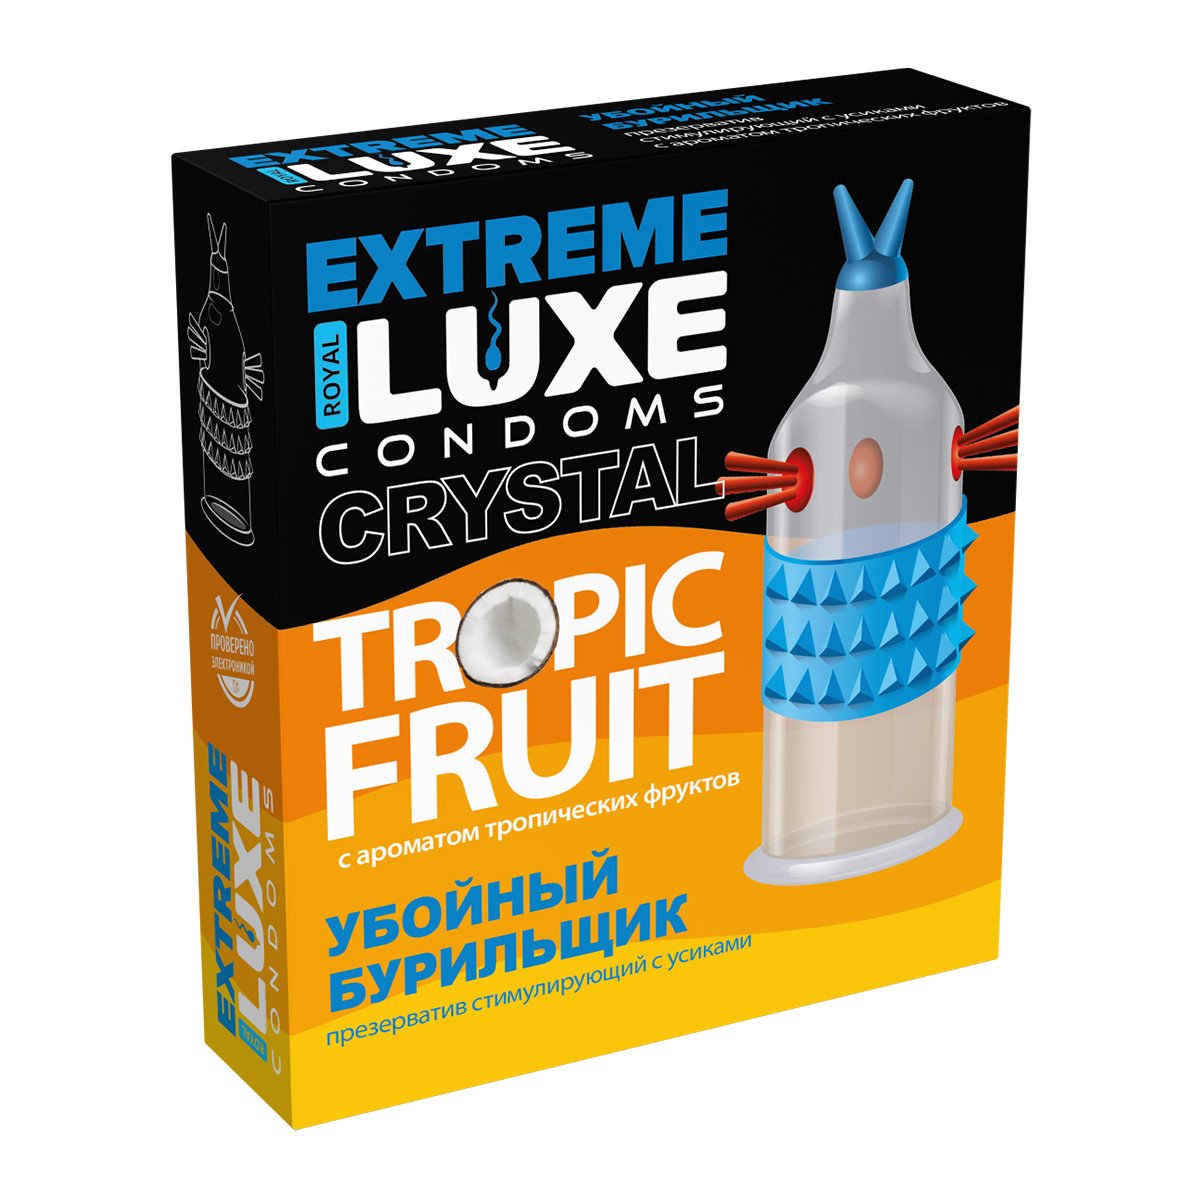 Luxe Extreme презервативы c ароматом тропических фруктов Убойный Бурильщик, 1 шт.